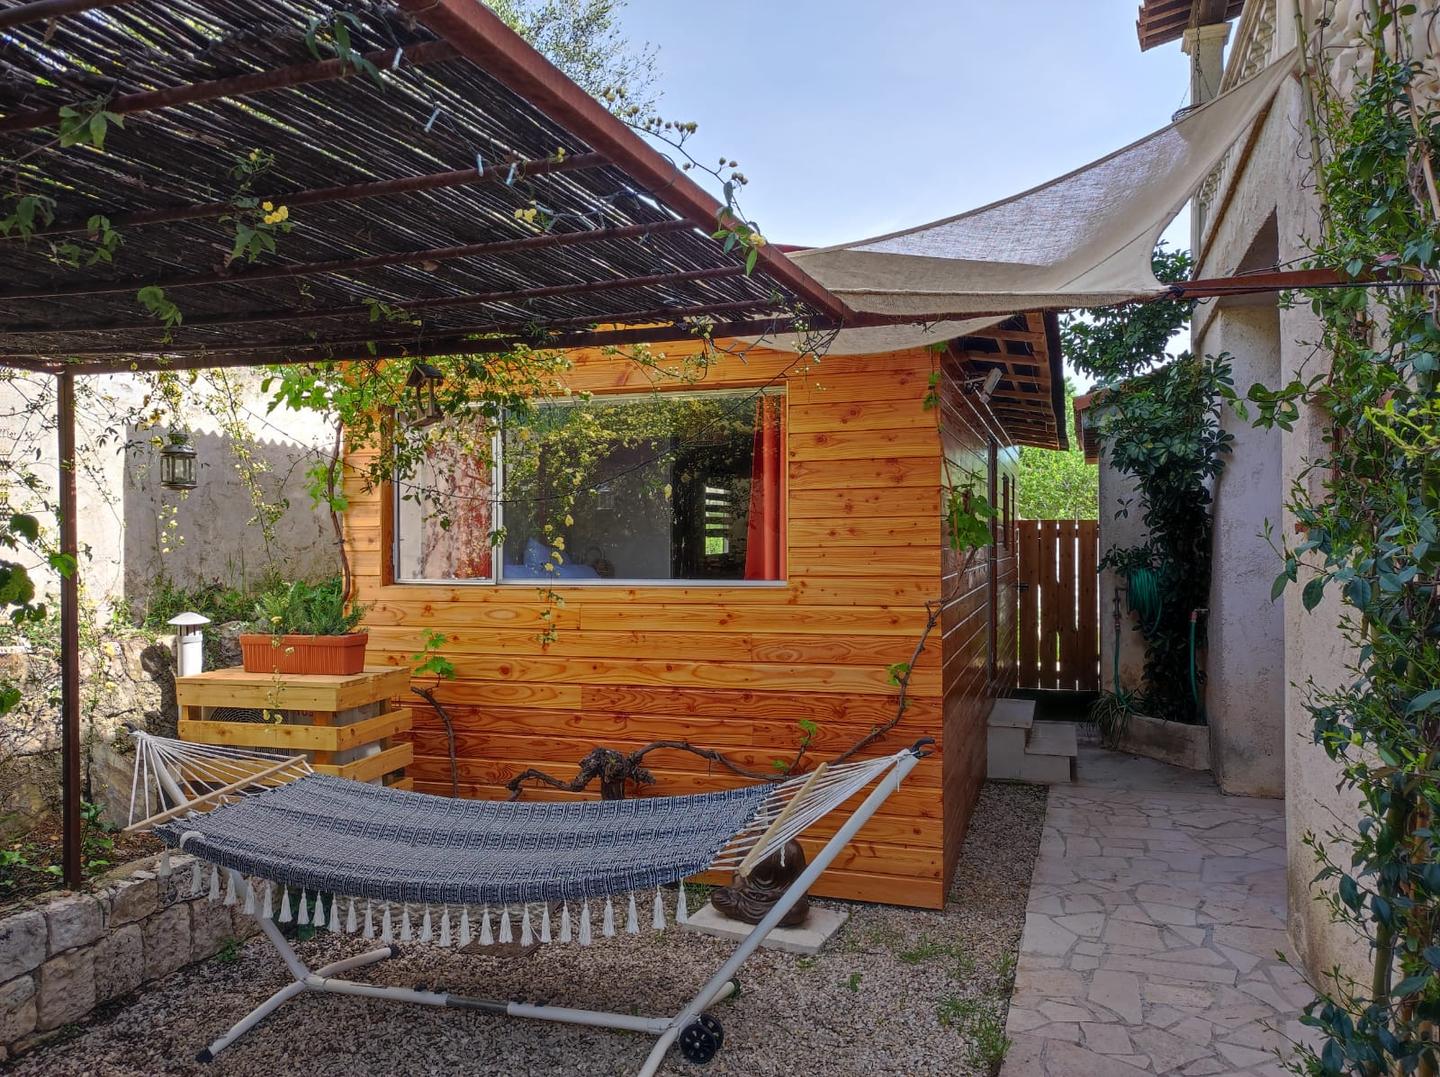 Logement GreenGo: "La Casetta" Charmant bungalow tout confort